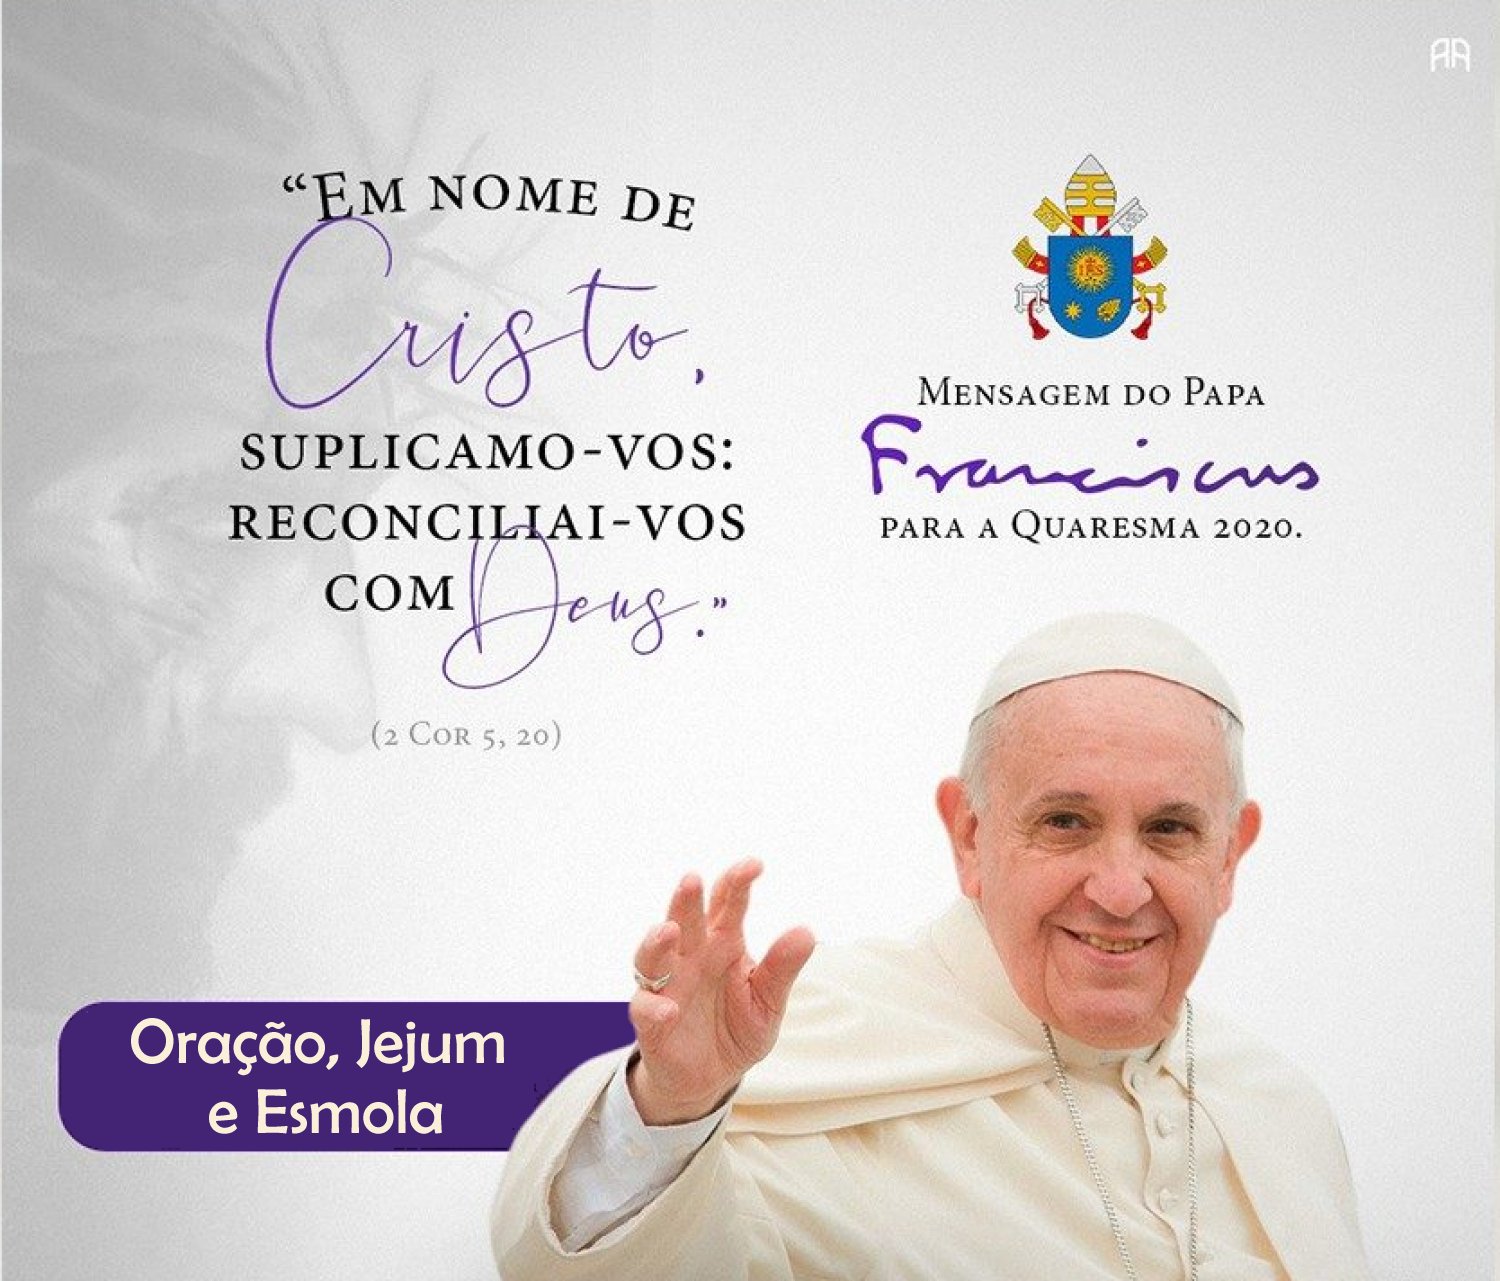 Mensagem do Papa Francisco para a Quaresma 2020